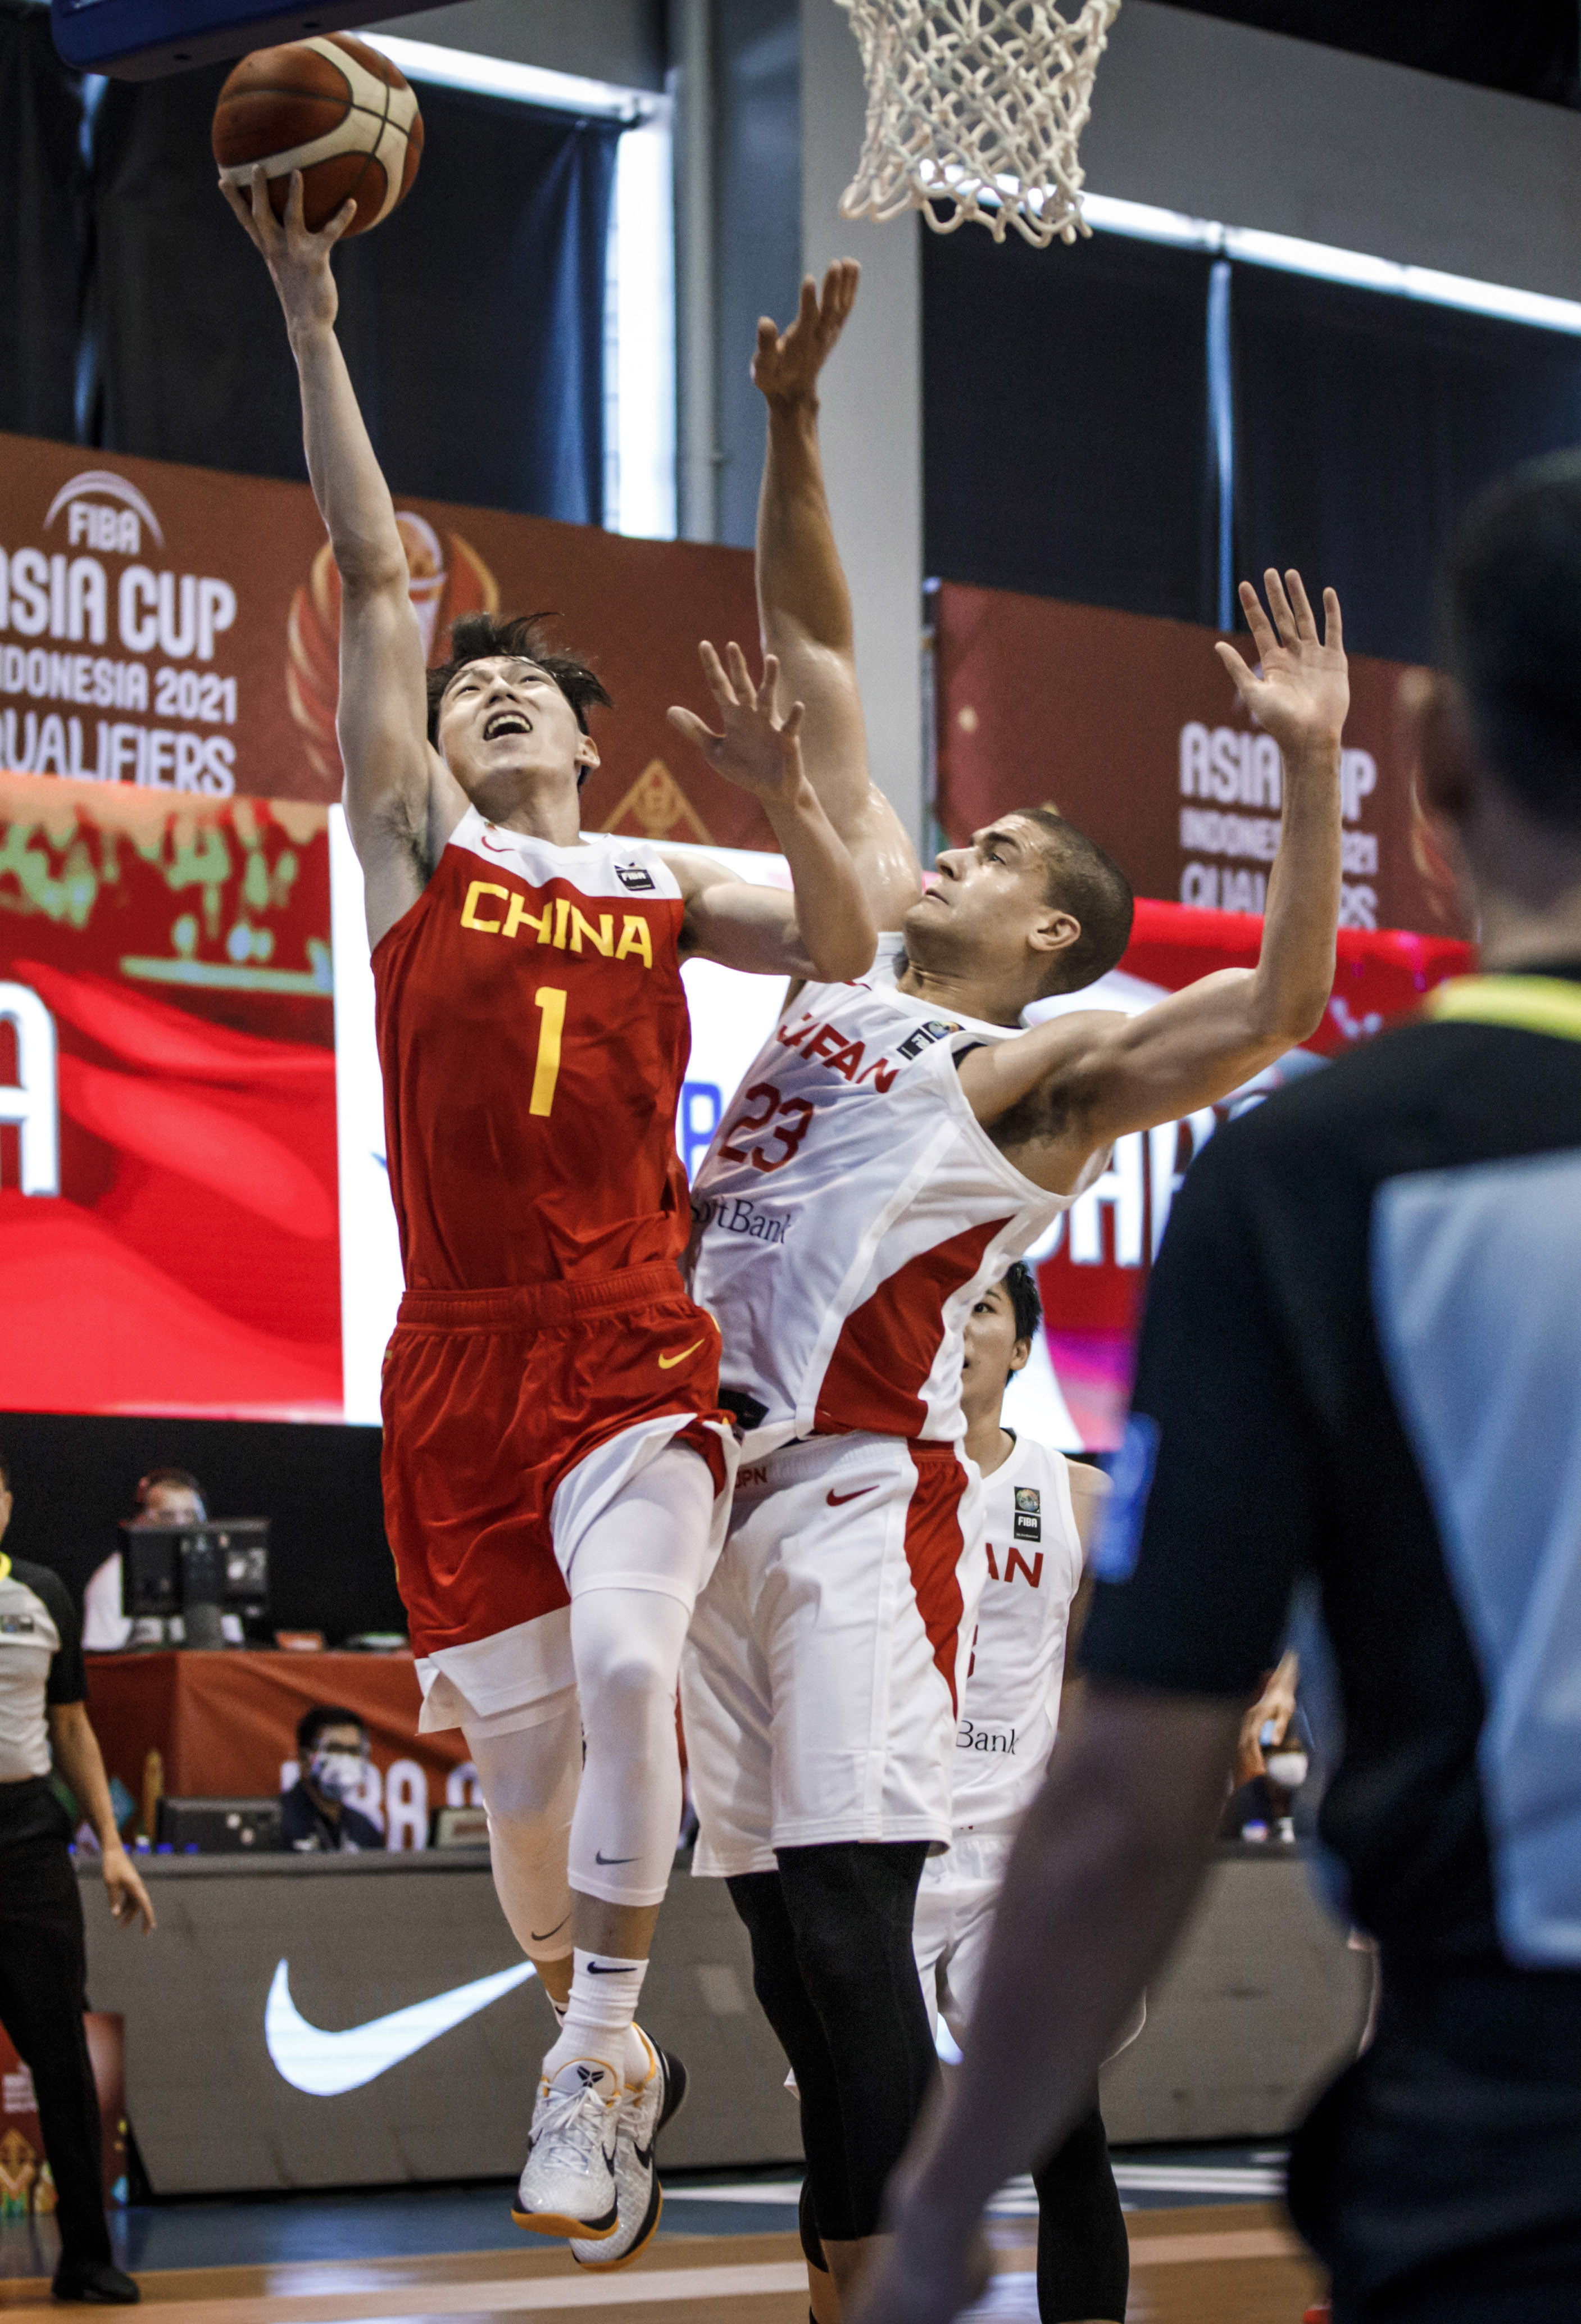 中国男篮亚洲杯预选赛力克日本队取得开门红